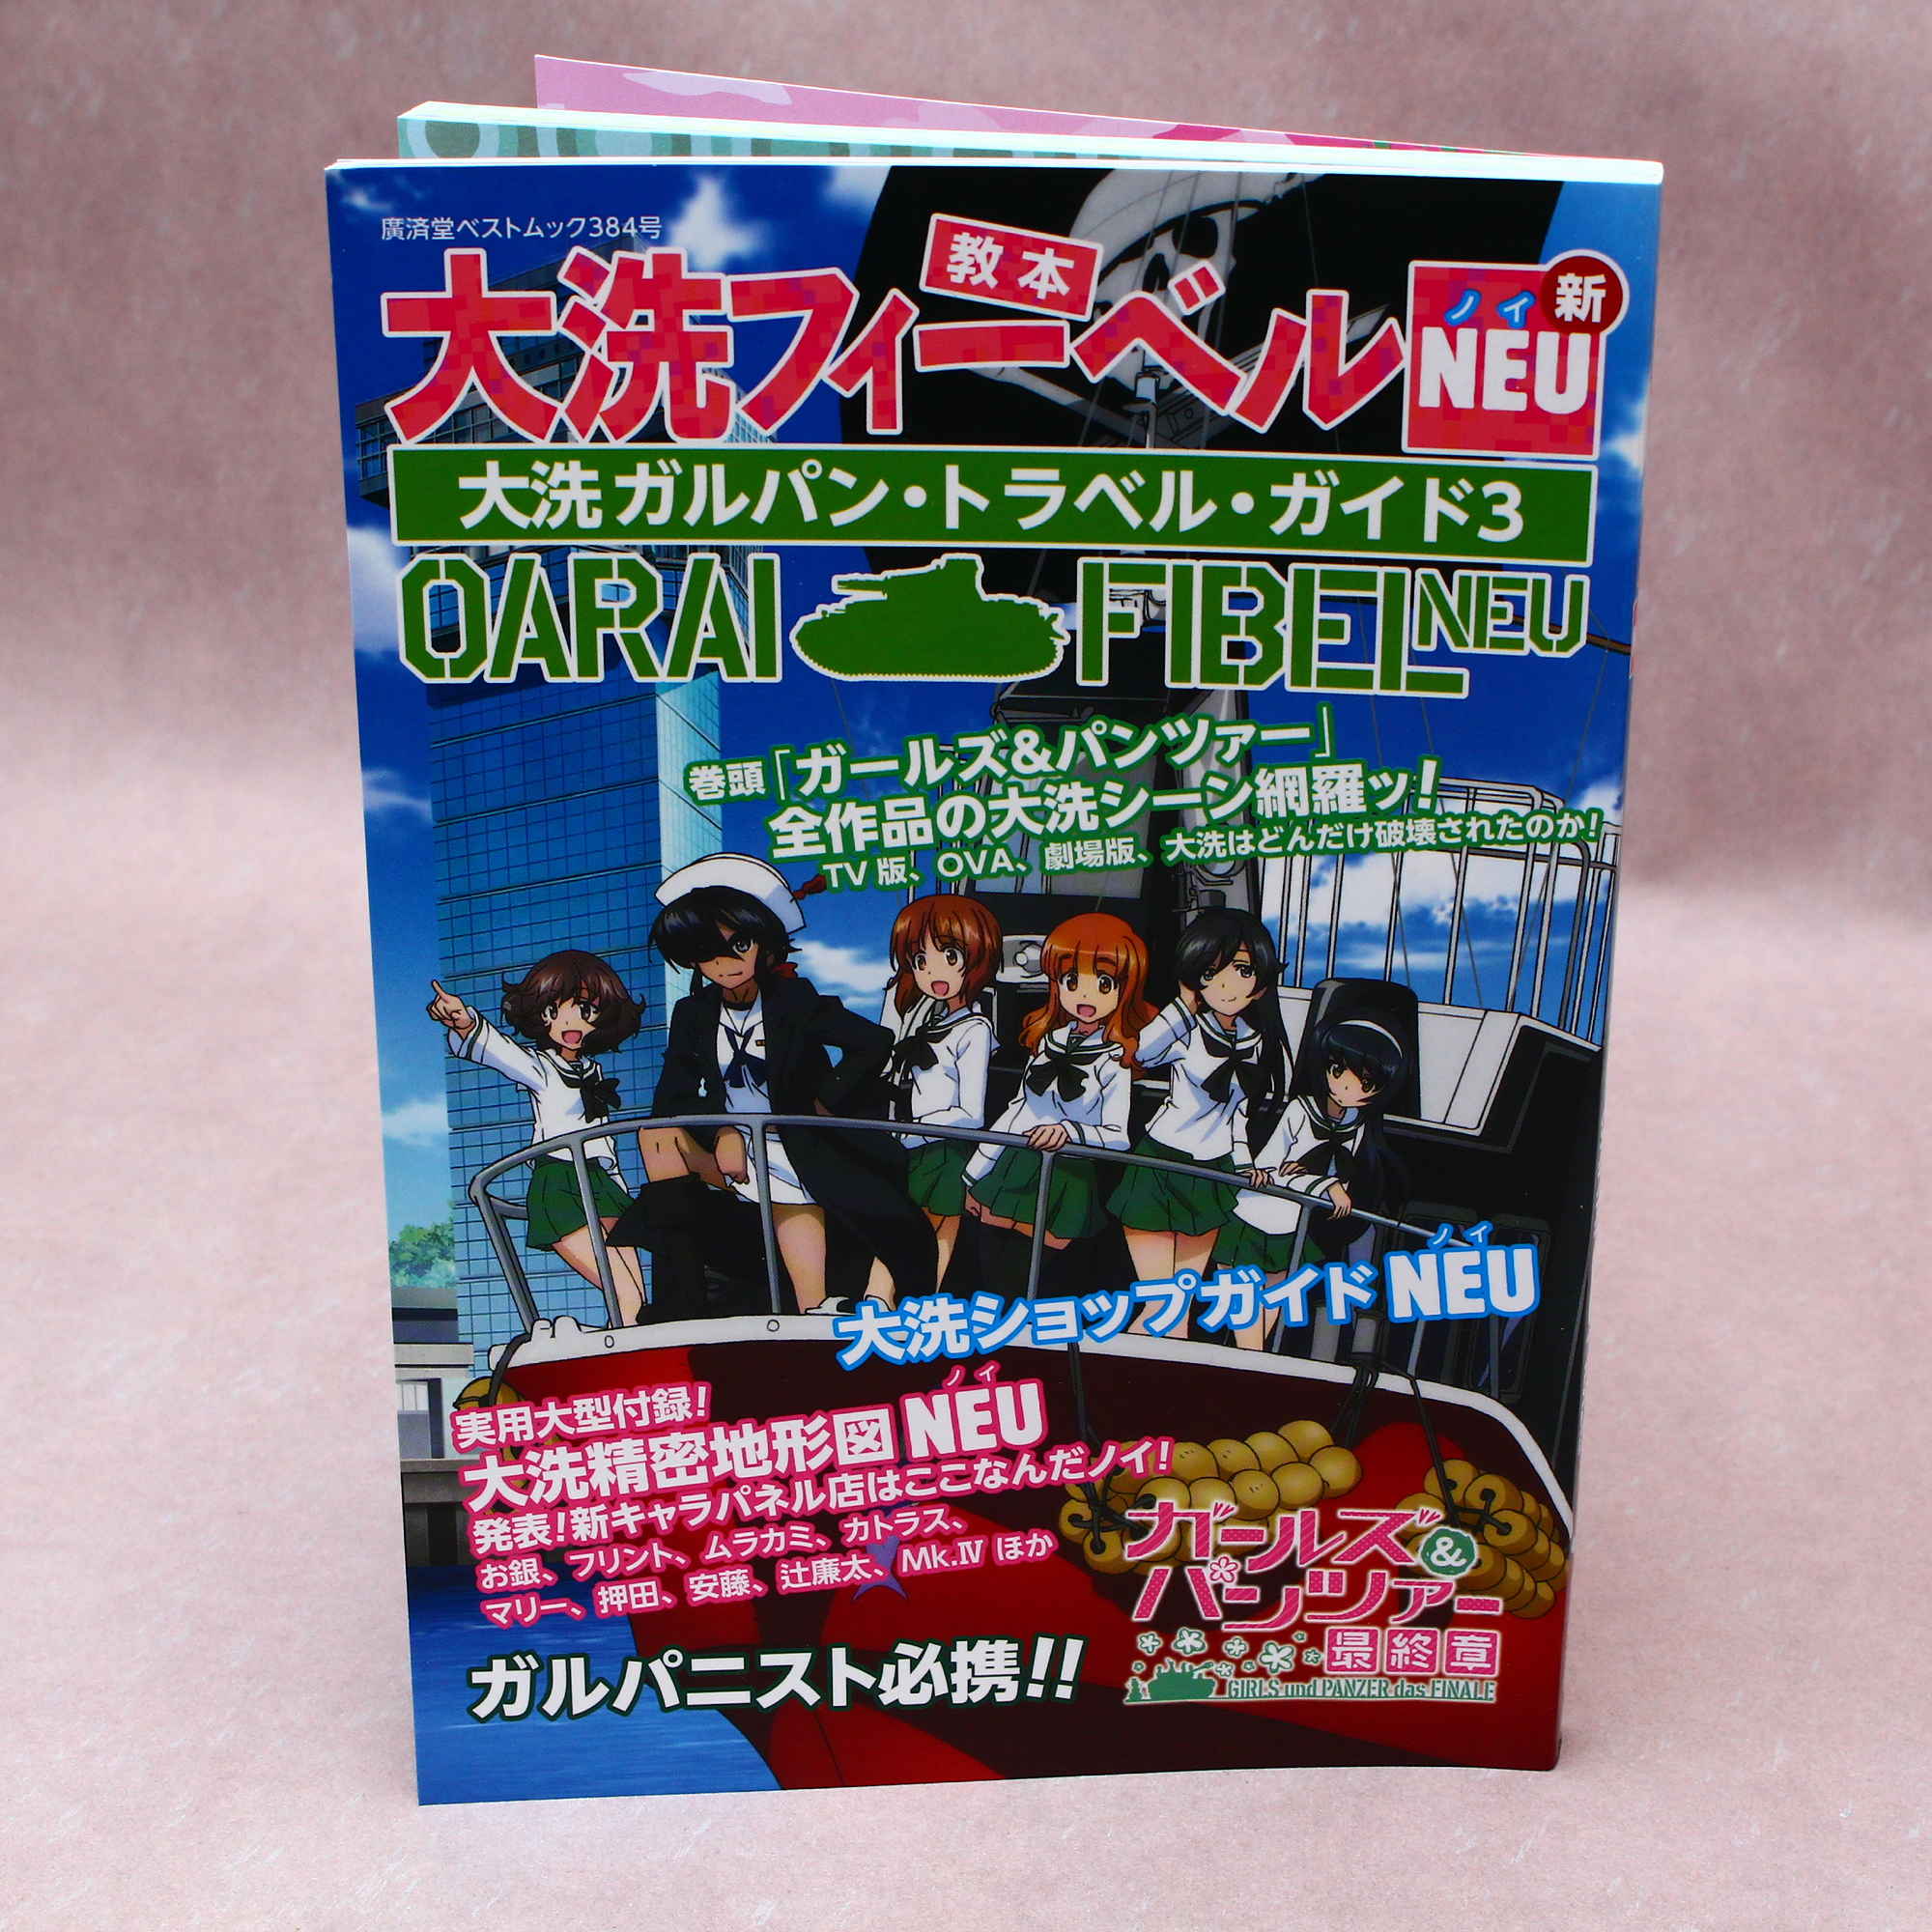 Girls Und Panzer Oarai Garupan Travel Guide 3 Oarai Fibel Neu